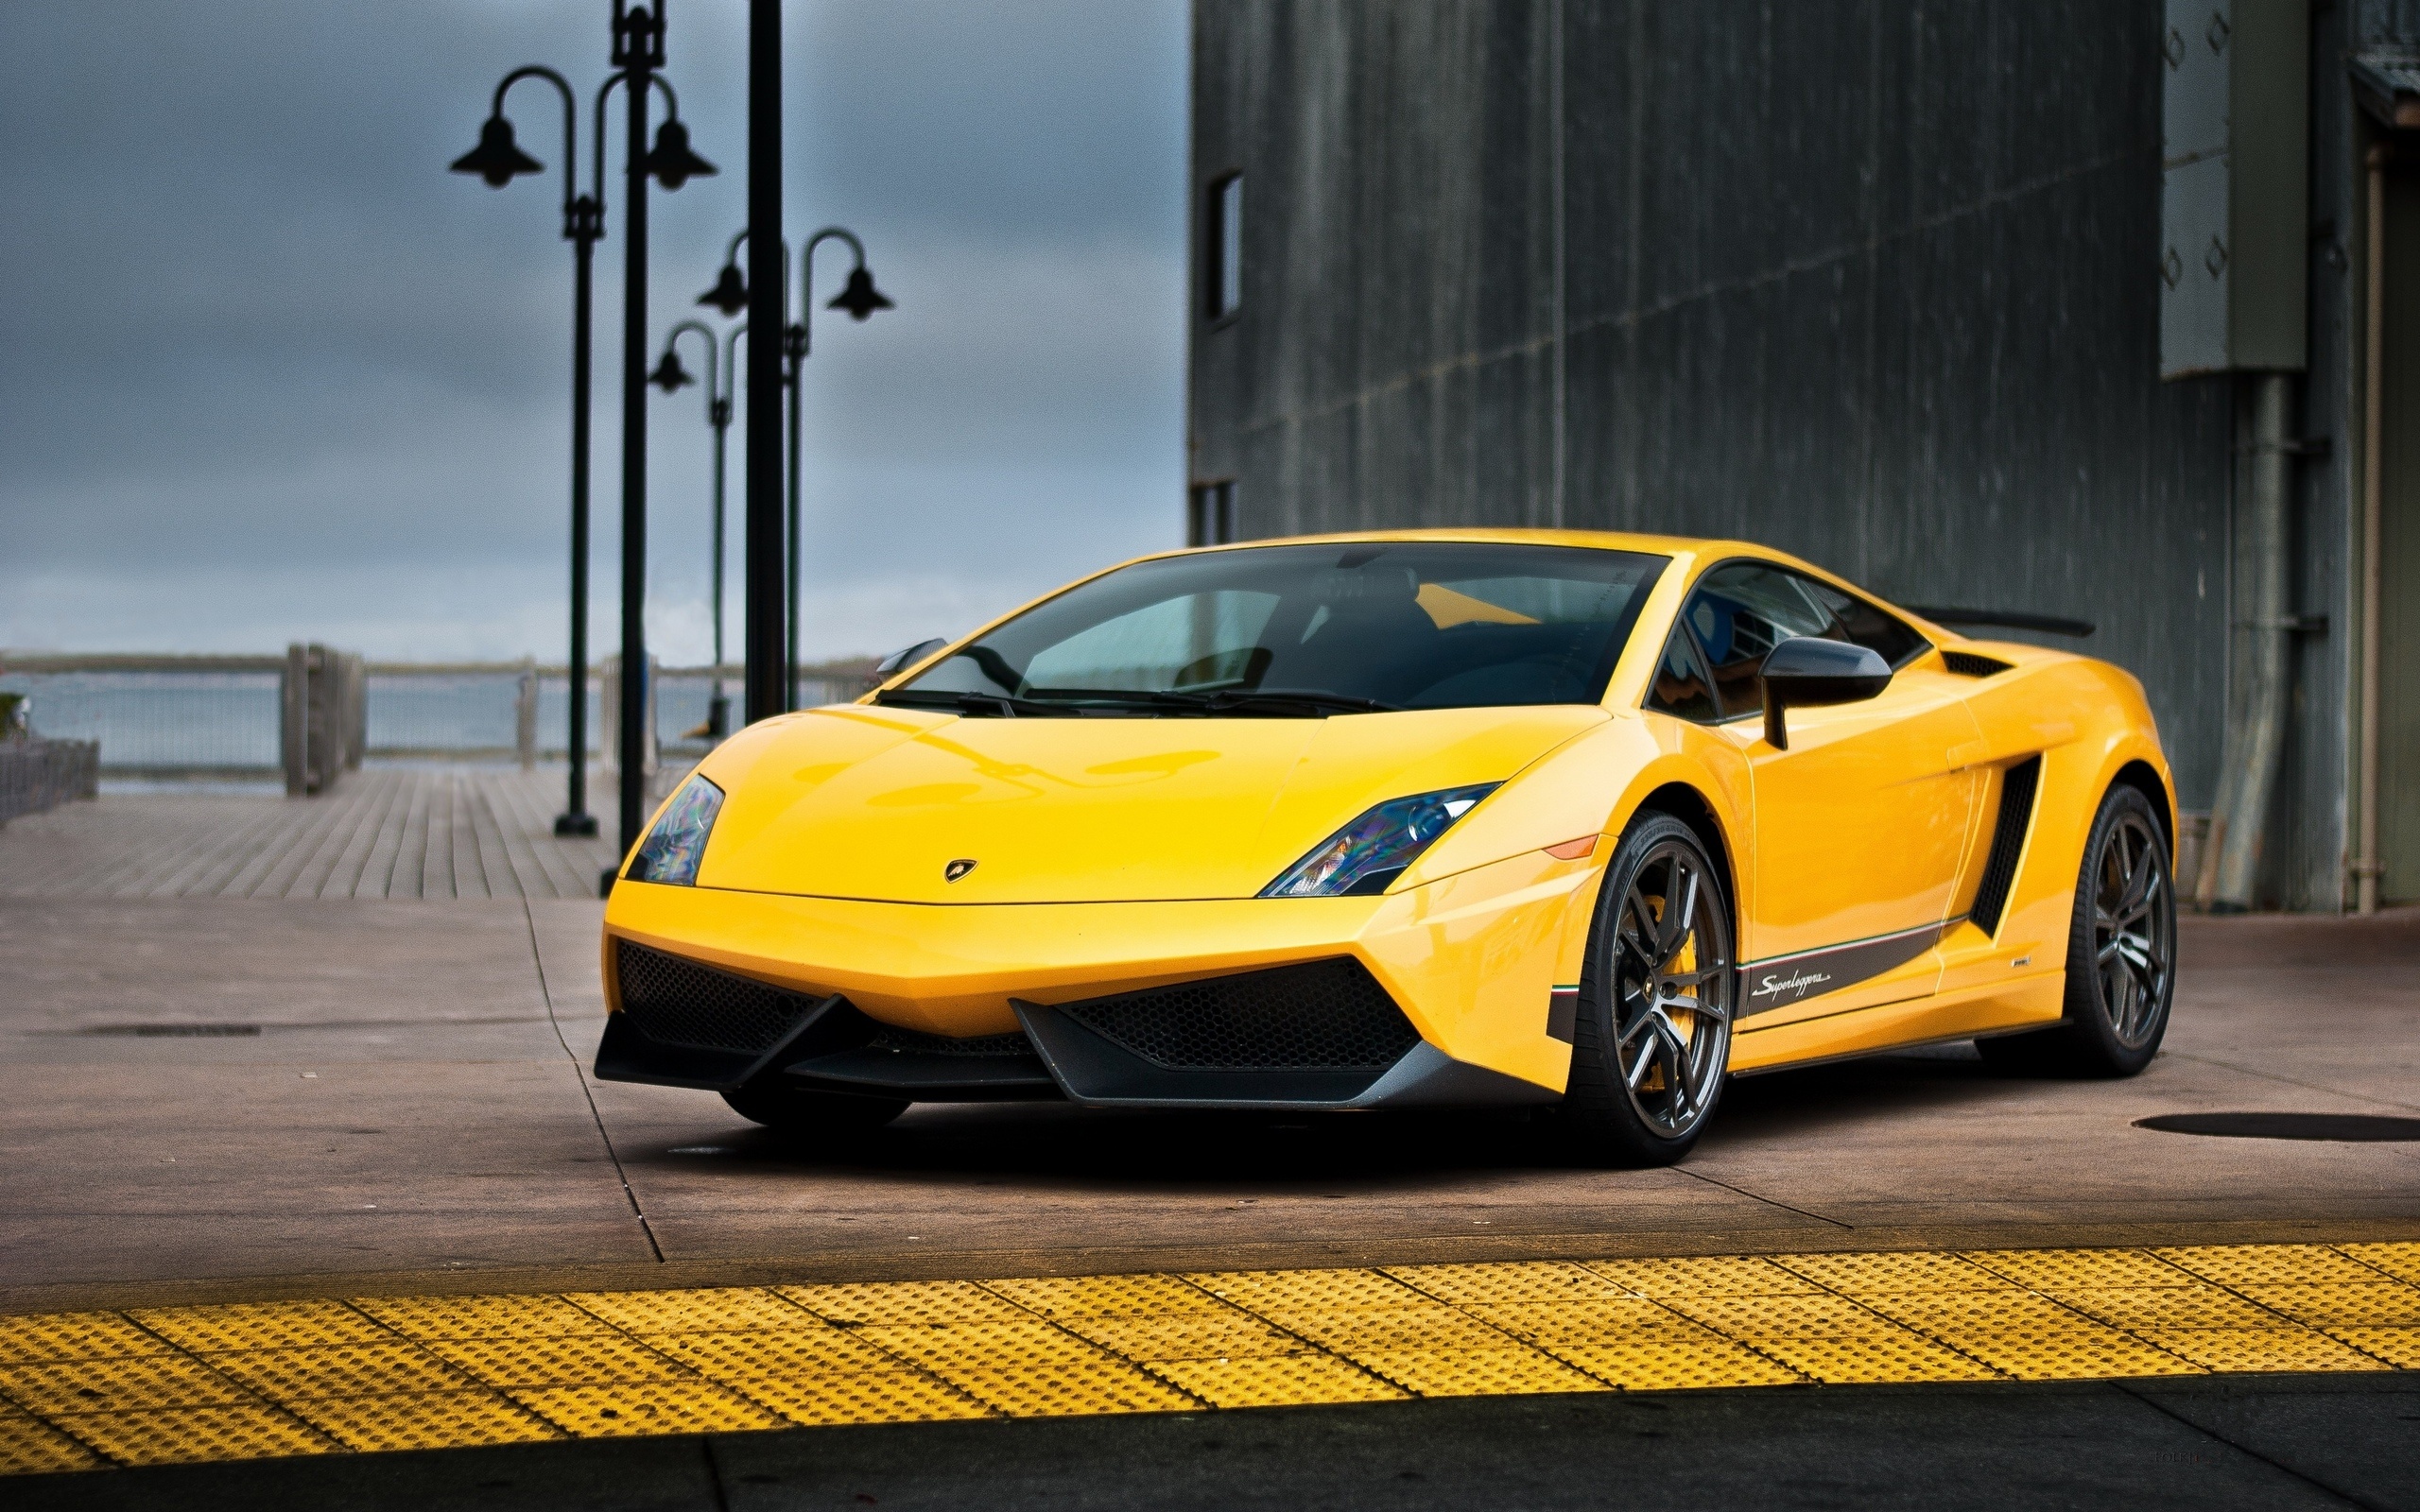 Lamborghini Gallardo, Superleggera model, HD background, Car wallpaper, 2560x1600 HD Desktop